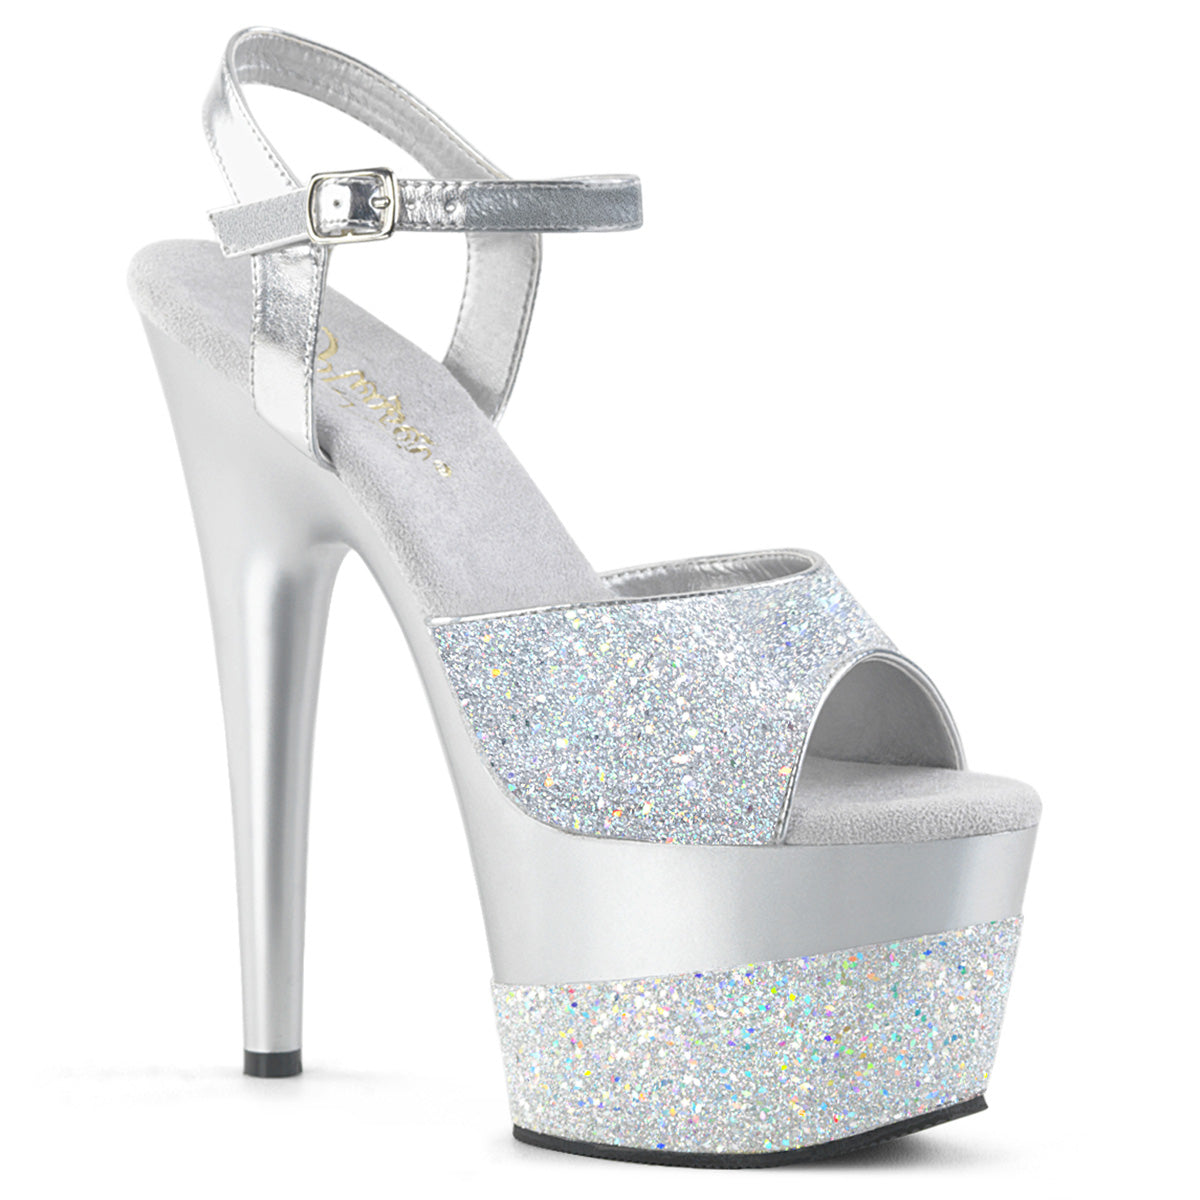 Pleaser Womens Sandals ADORE-709-2G Slv Multi Glitter/Slv Multi Glitter